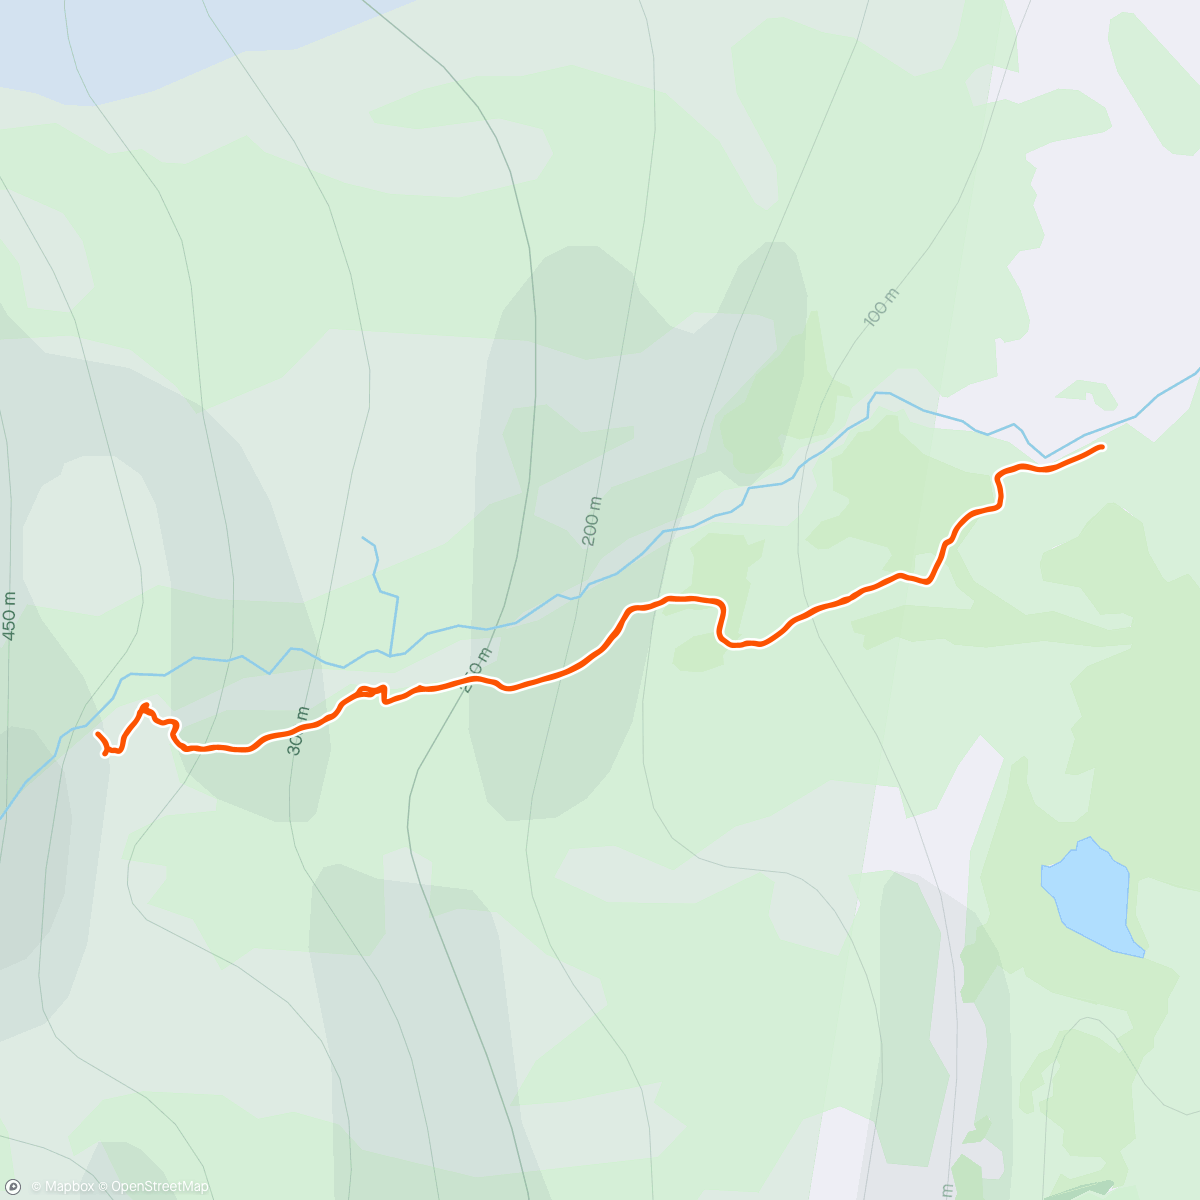 「Múlagljúfur canyon」活動的地圖